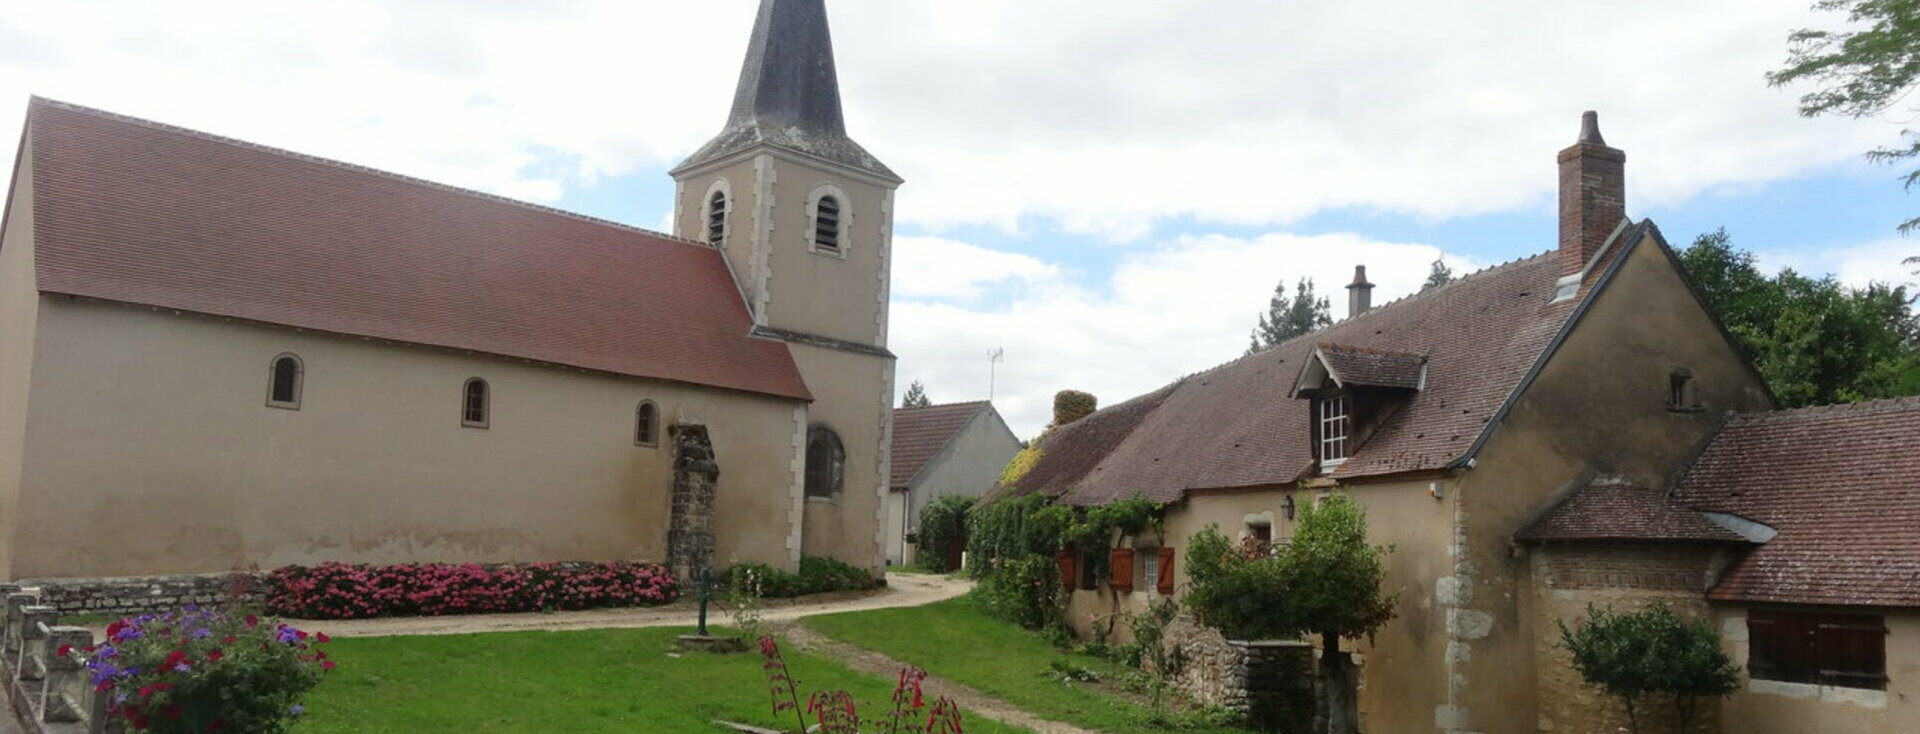 Site officiel de la communauté de communes Cœur de Berry